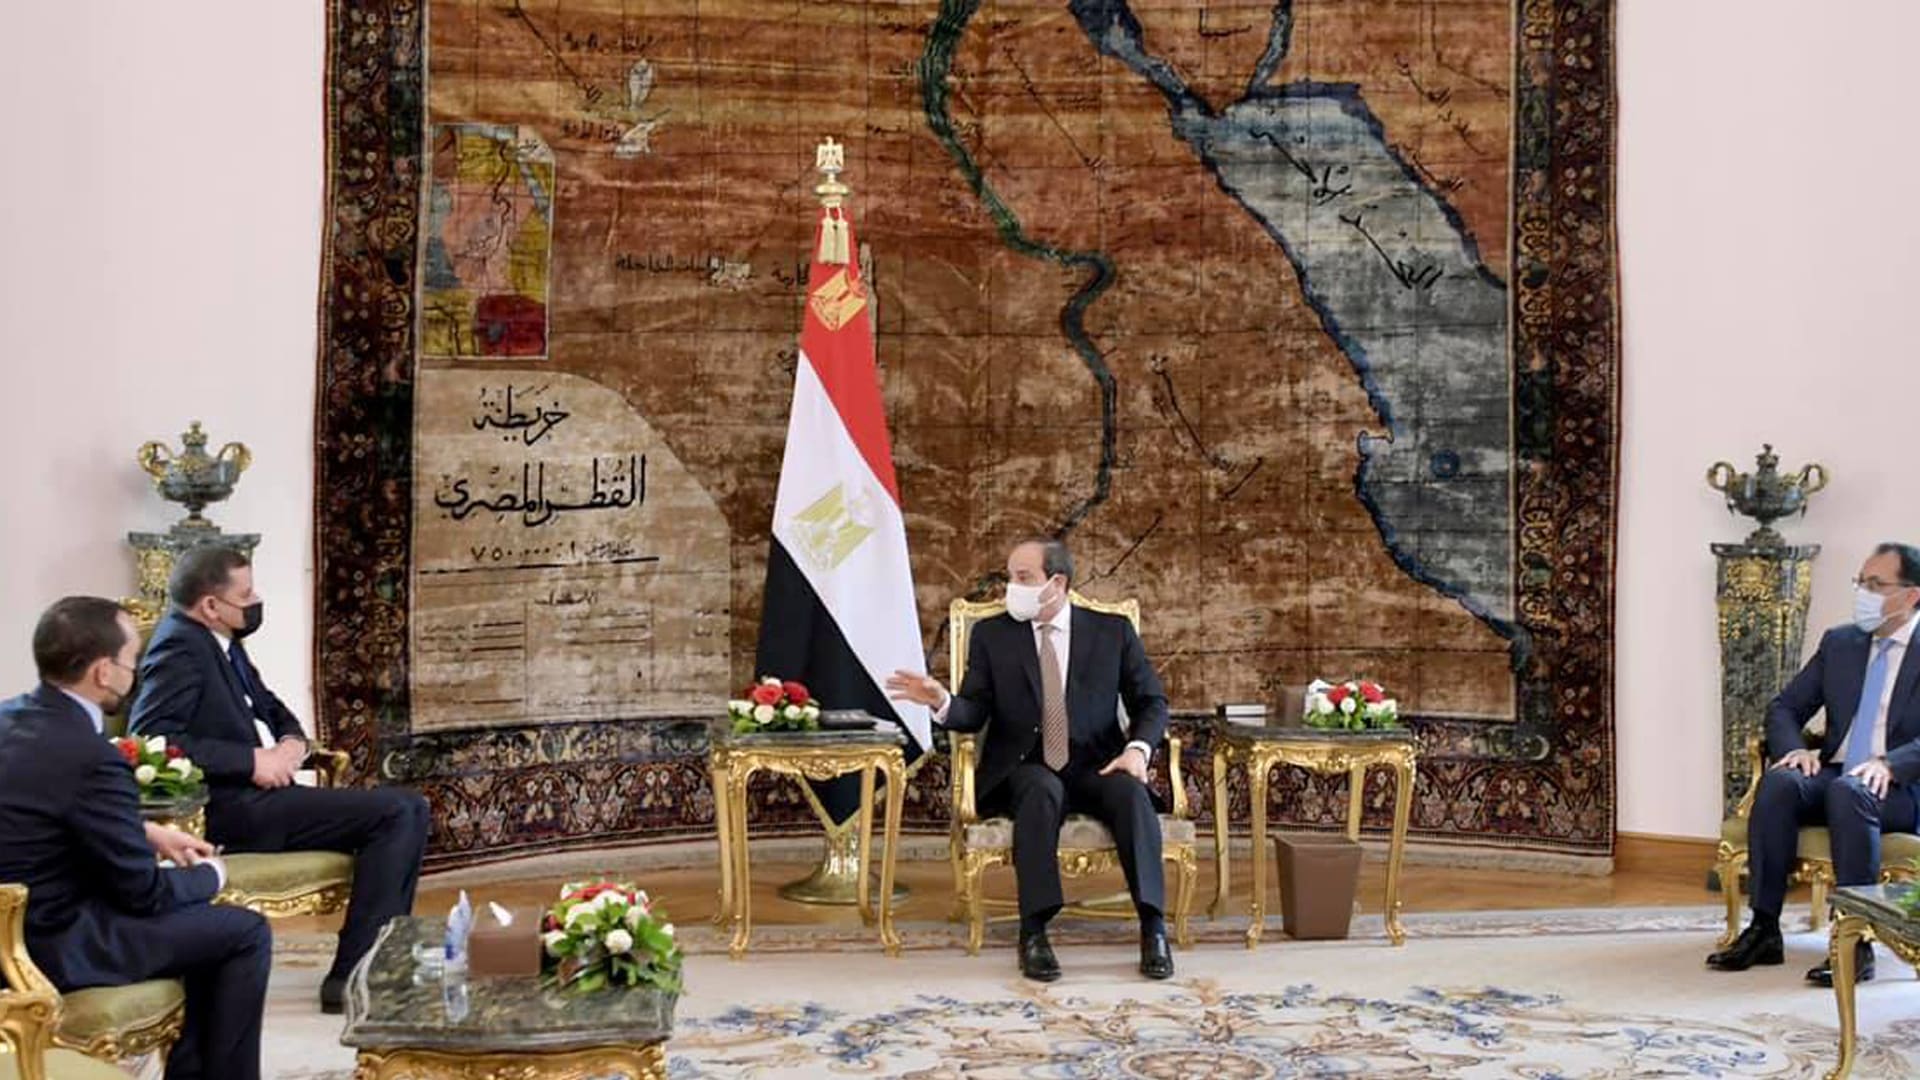 السيسي يستقبل رئيس حكومة ليبيا الجديدة.. و"دبيبة" يتطلع لـ"استنساخ التجربة المصرية"